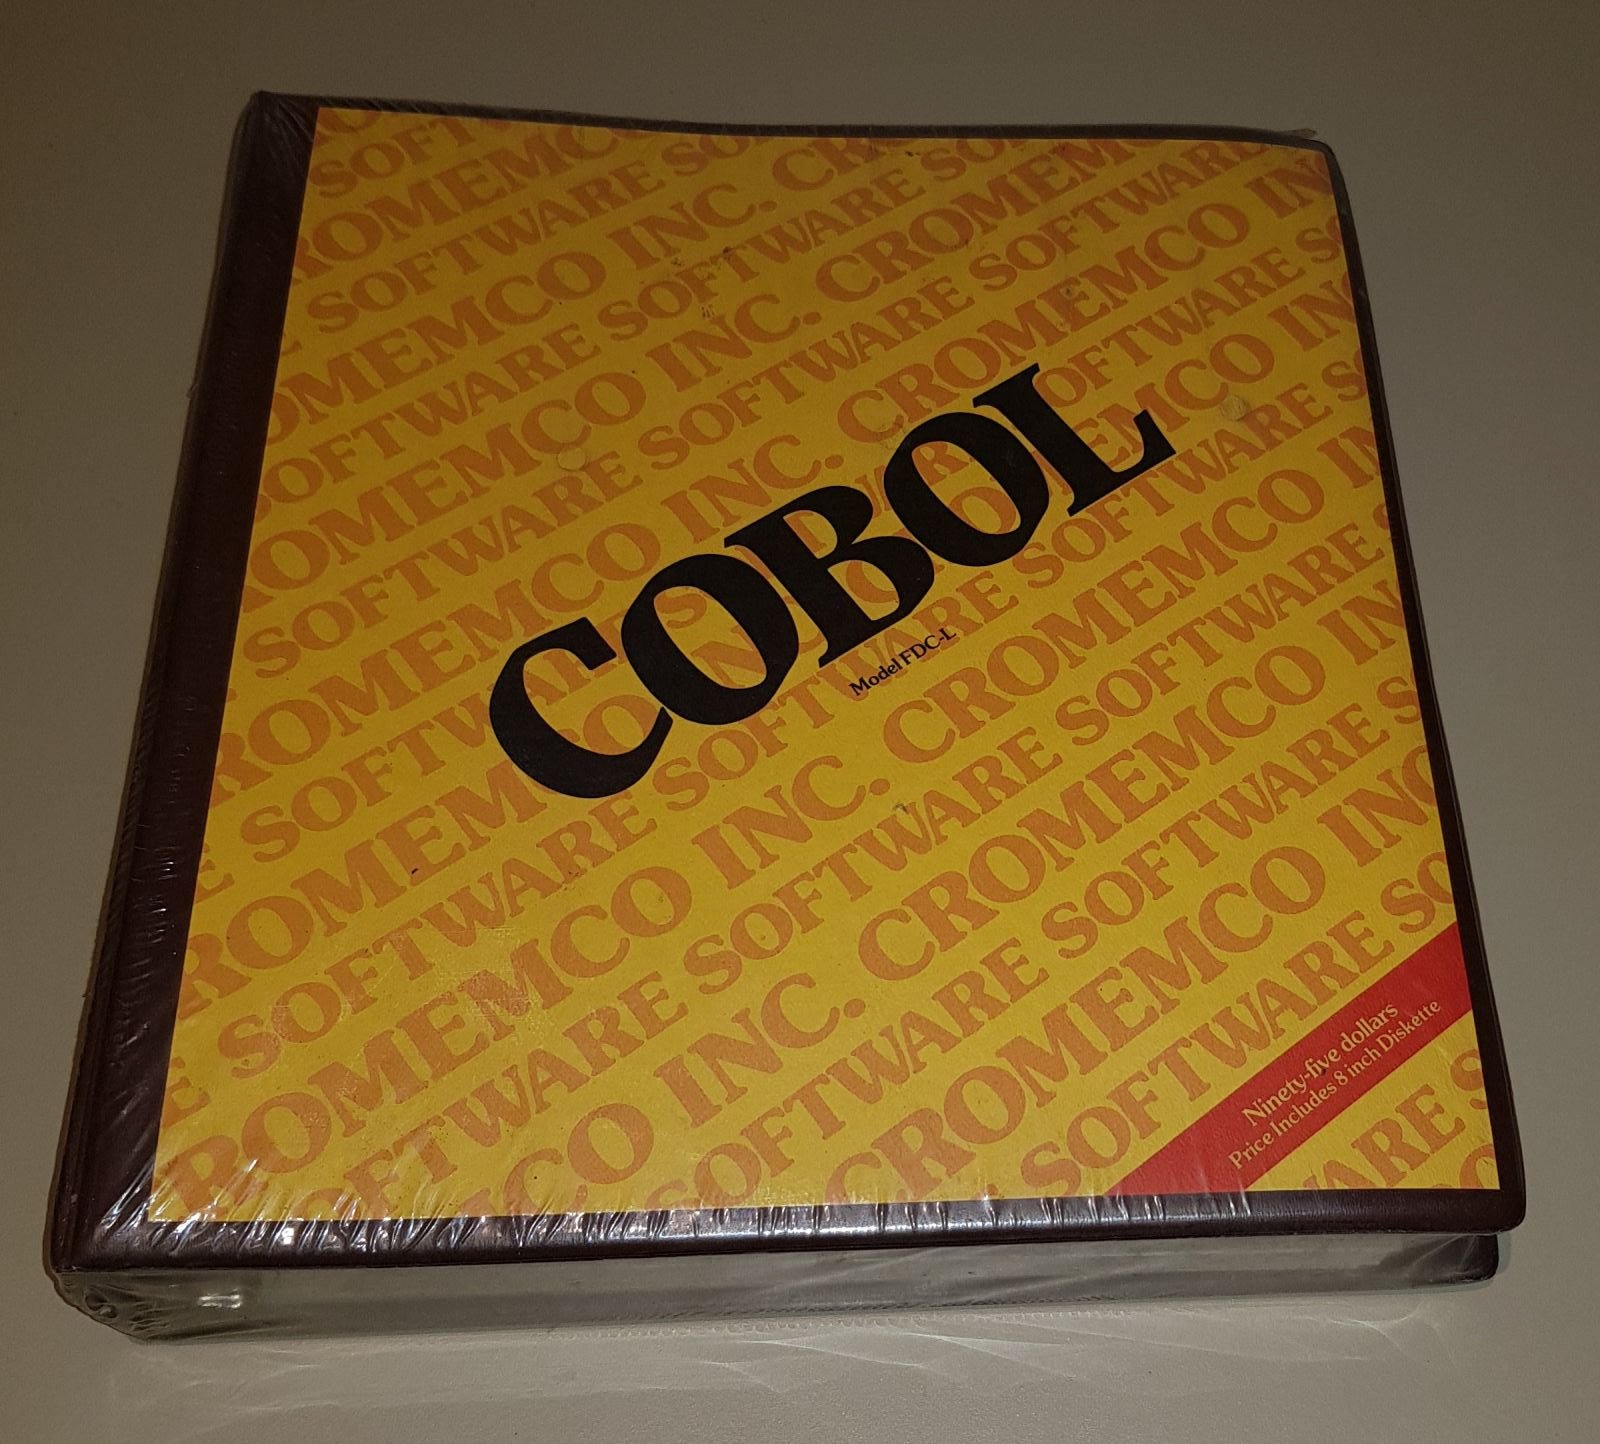 Cromemco COBOL on 8